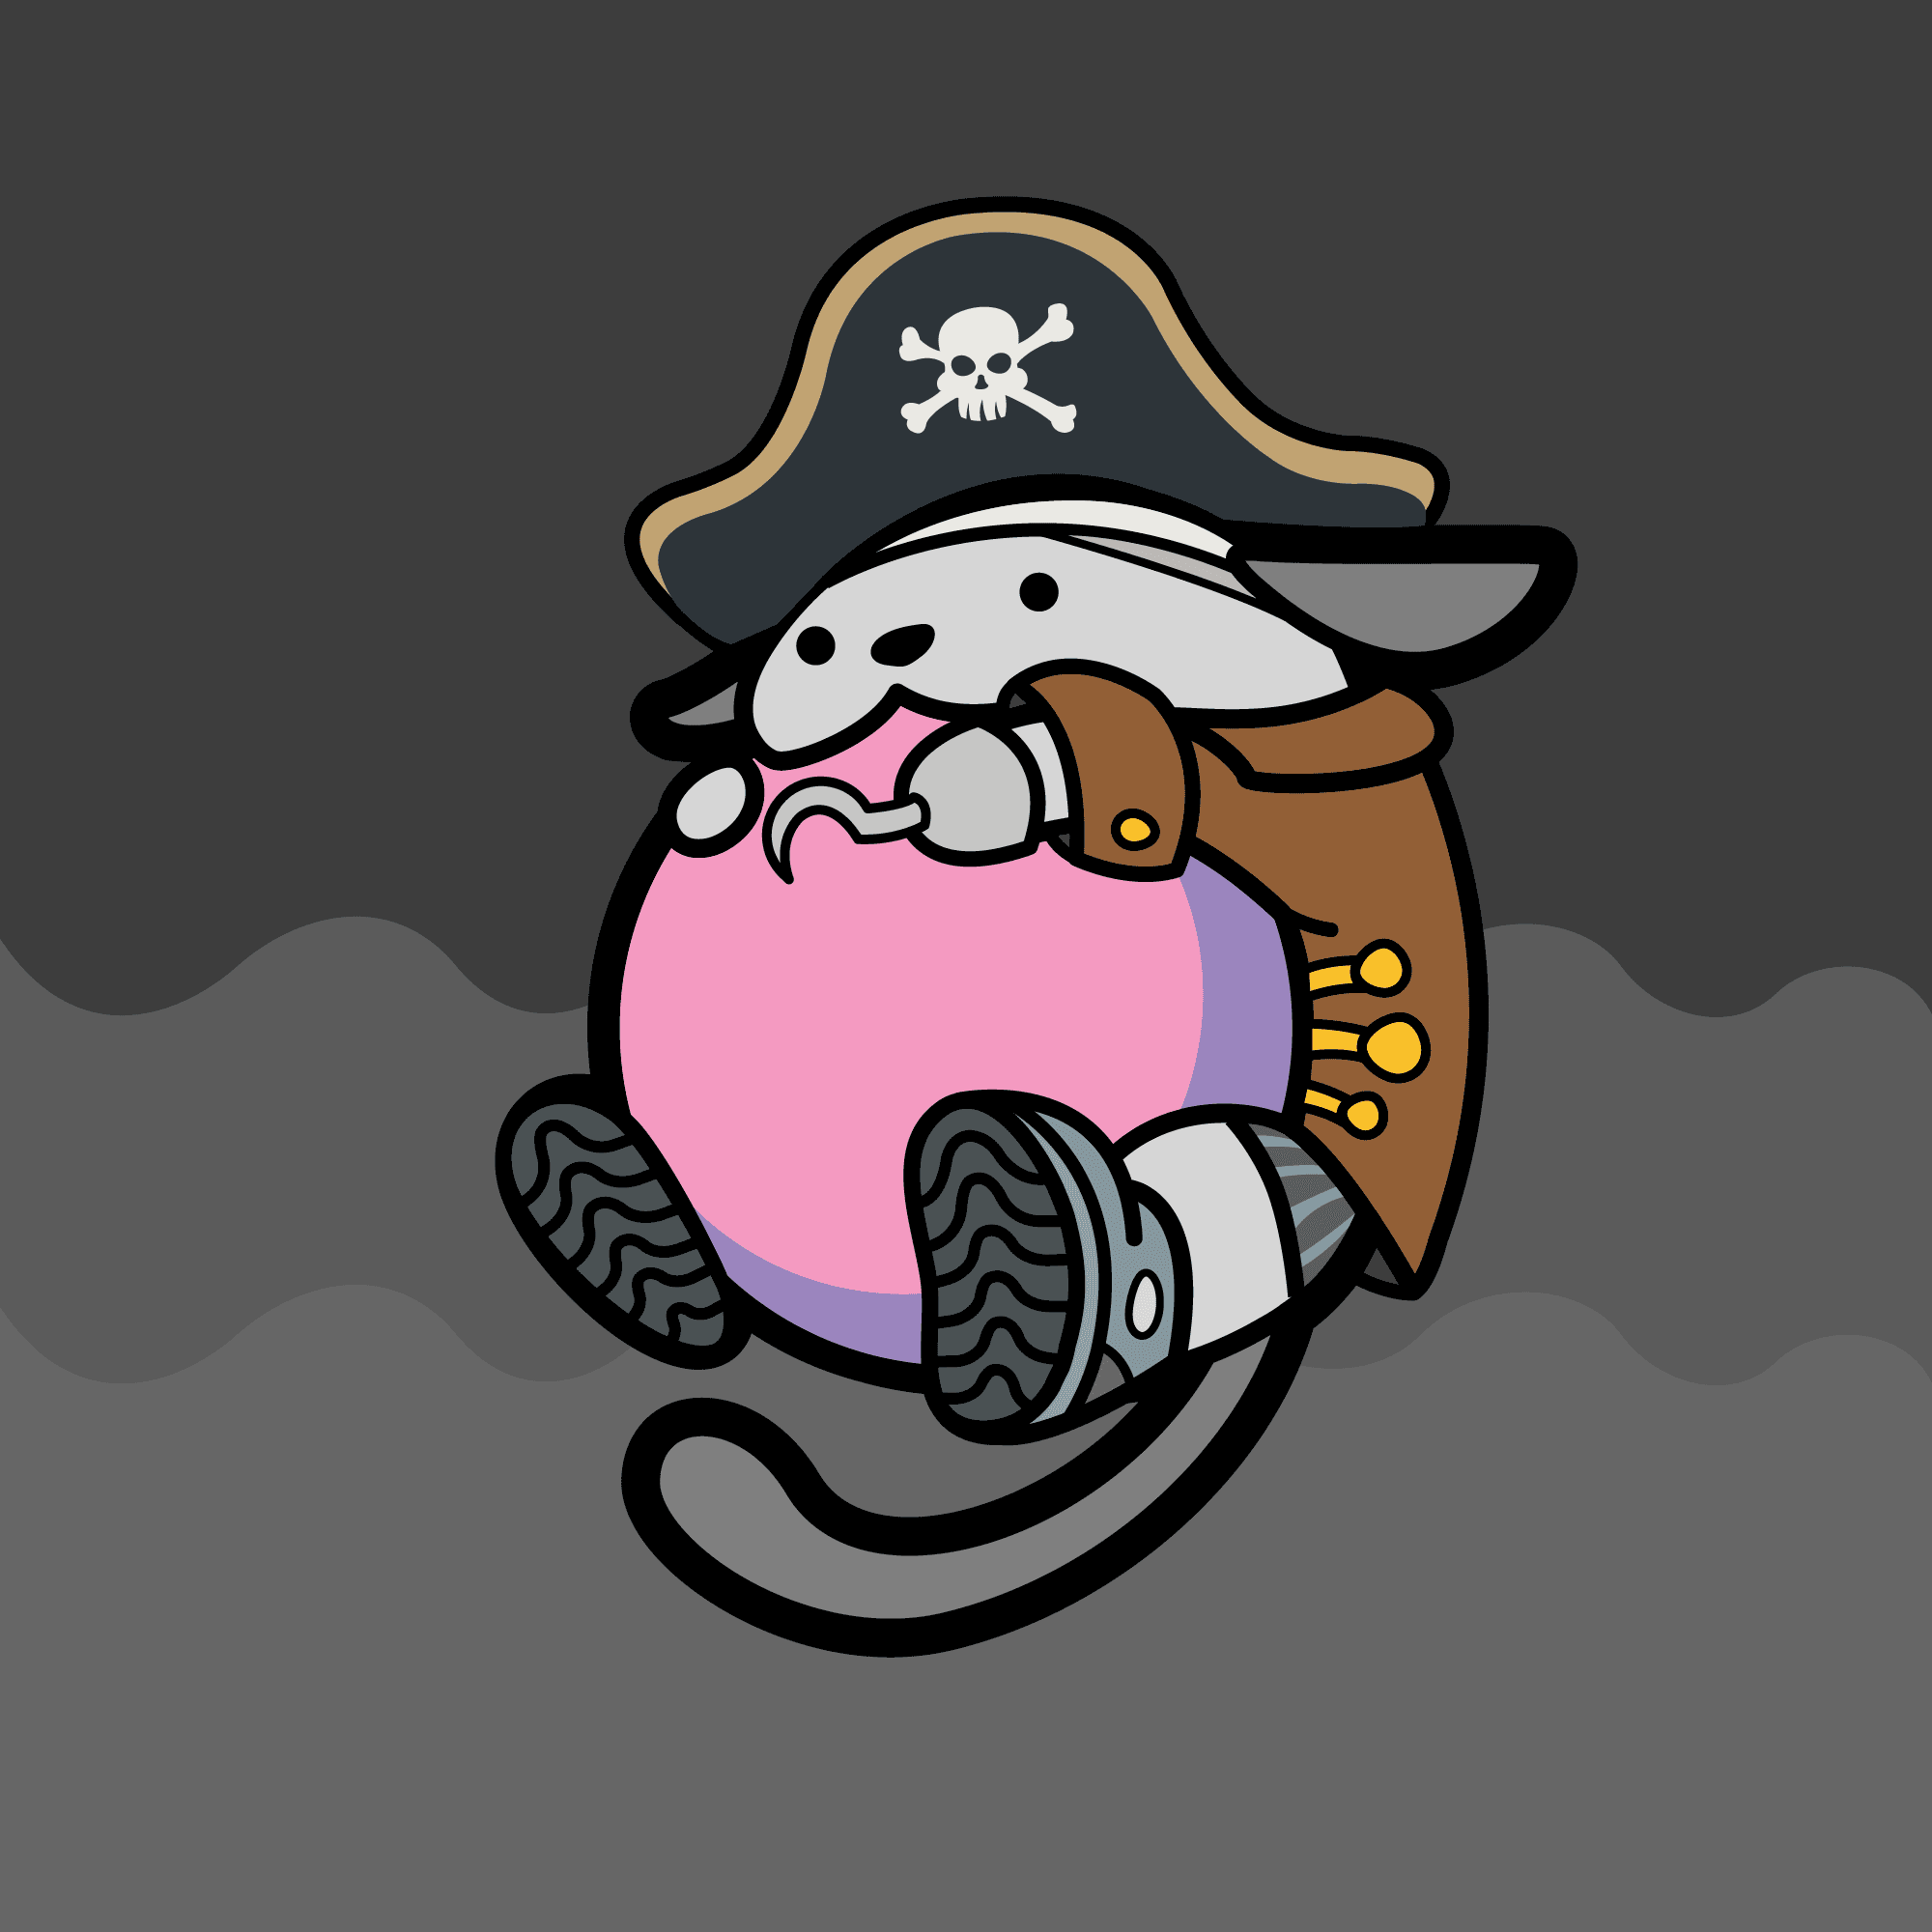 Wapuu #1 - Pink Pirate